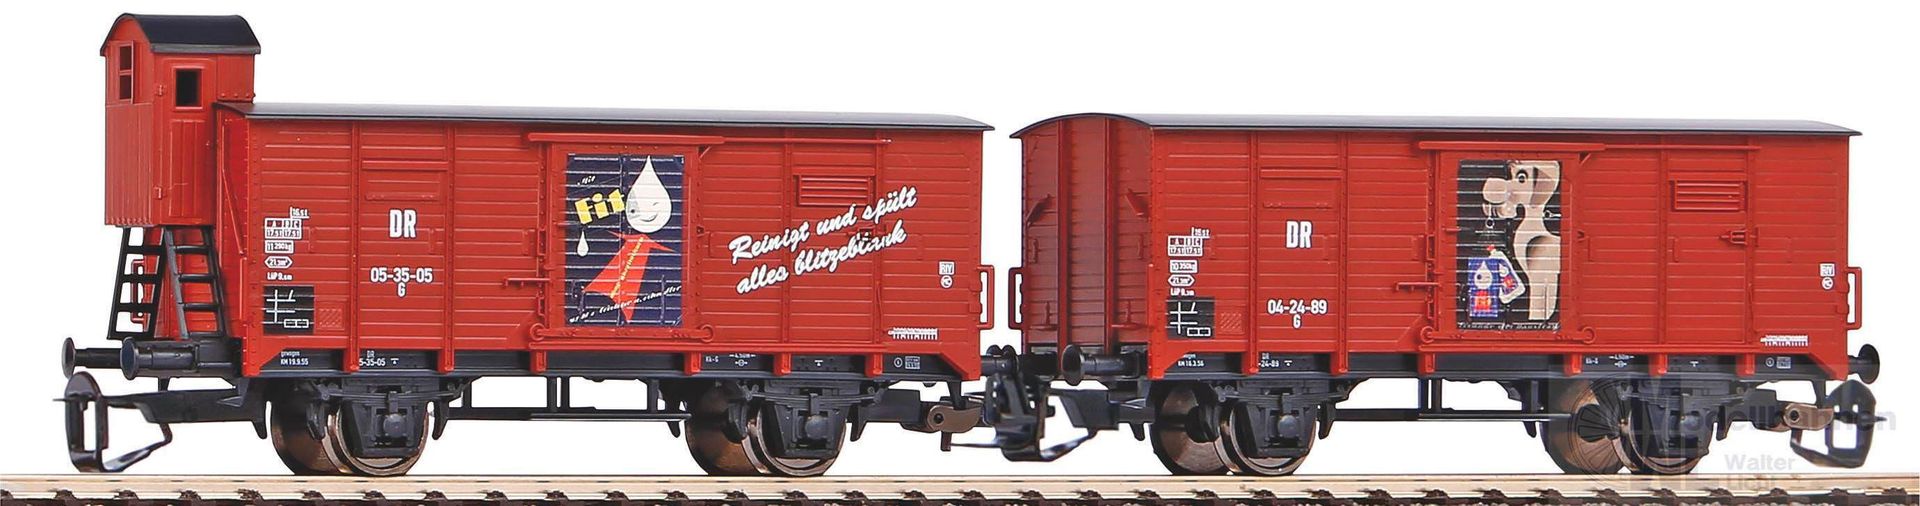 Piko 47032 - Güterwagen Set DR Ep.III G02 FIT TT 1:120